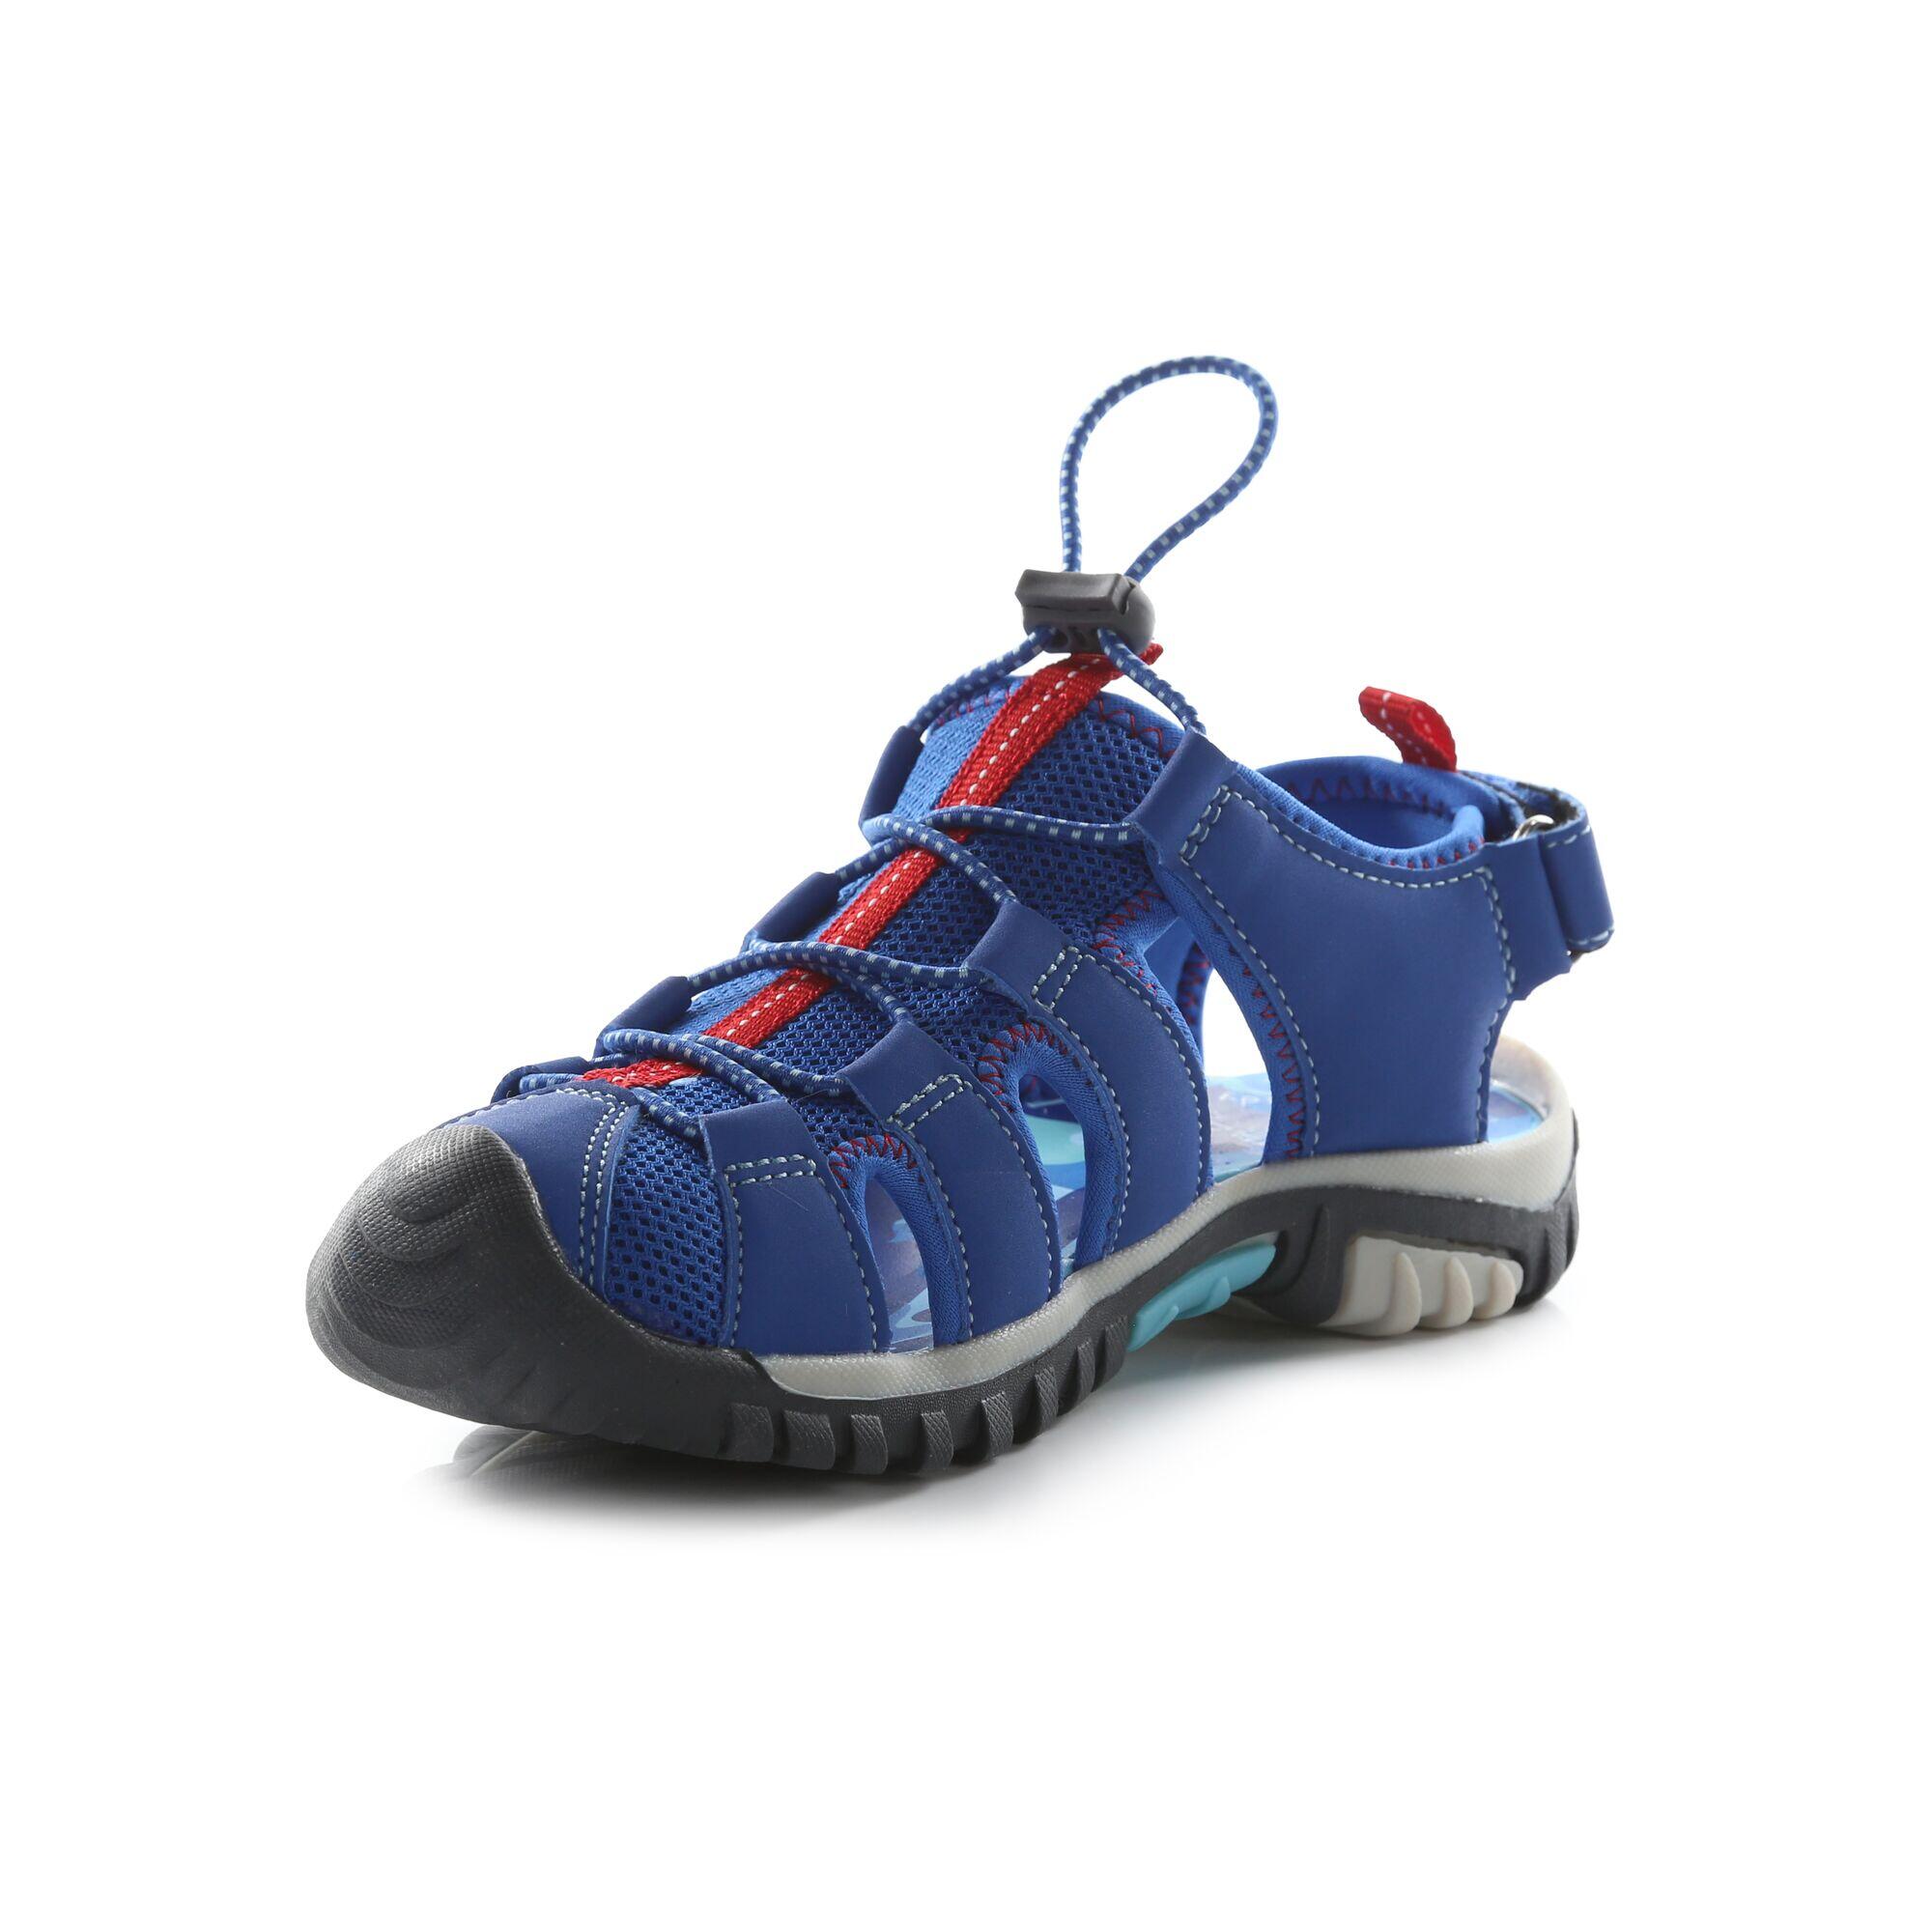 Peppa Pig Kids Walking Sandals - Imperial Blue 3/5